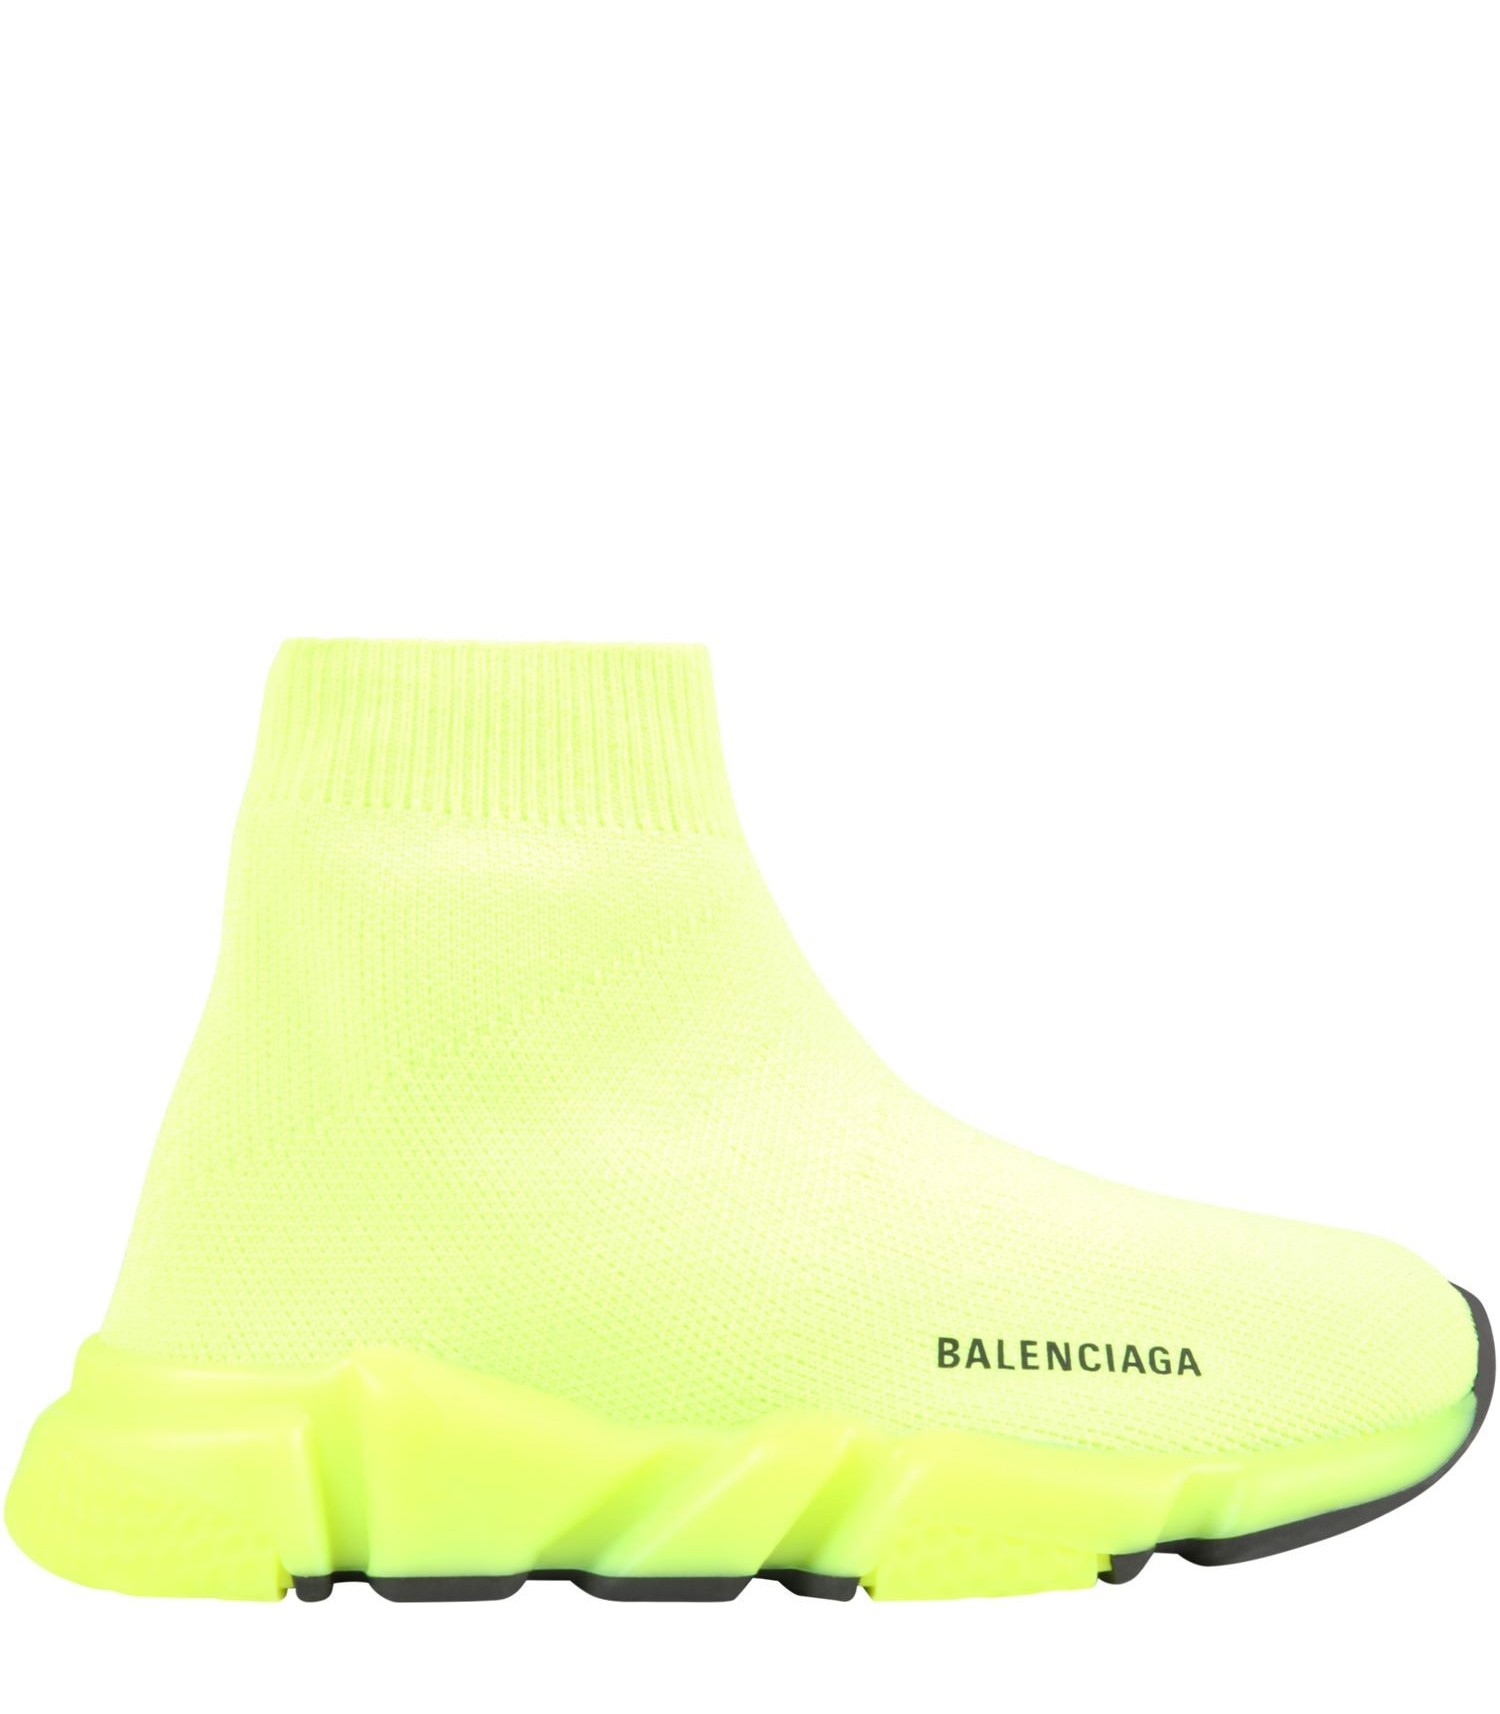 Balenciaga Sneakers gialle fluo per bambini con logo - CoccoleBimbi